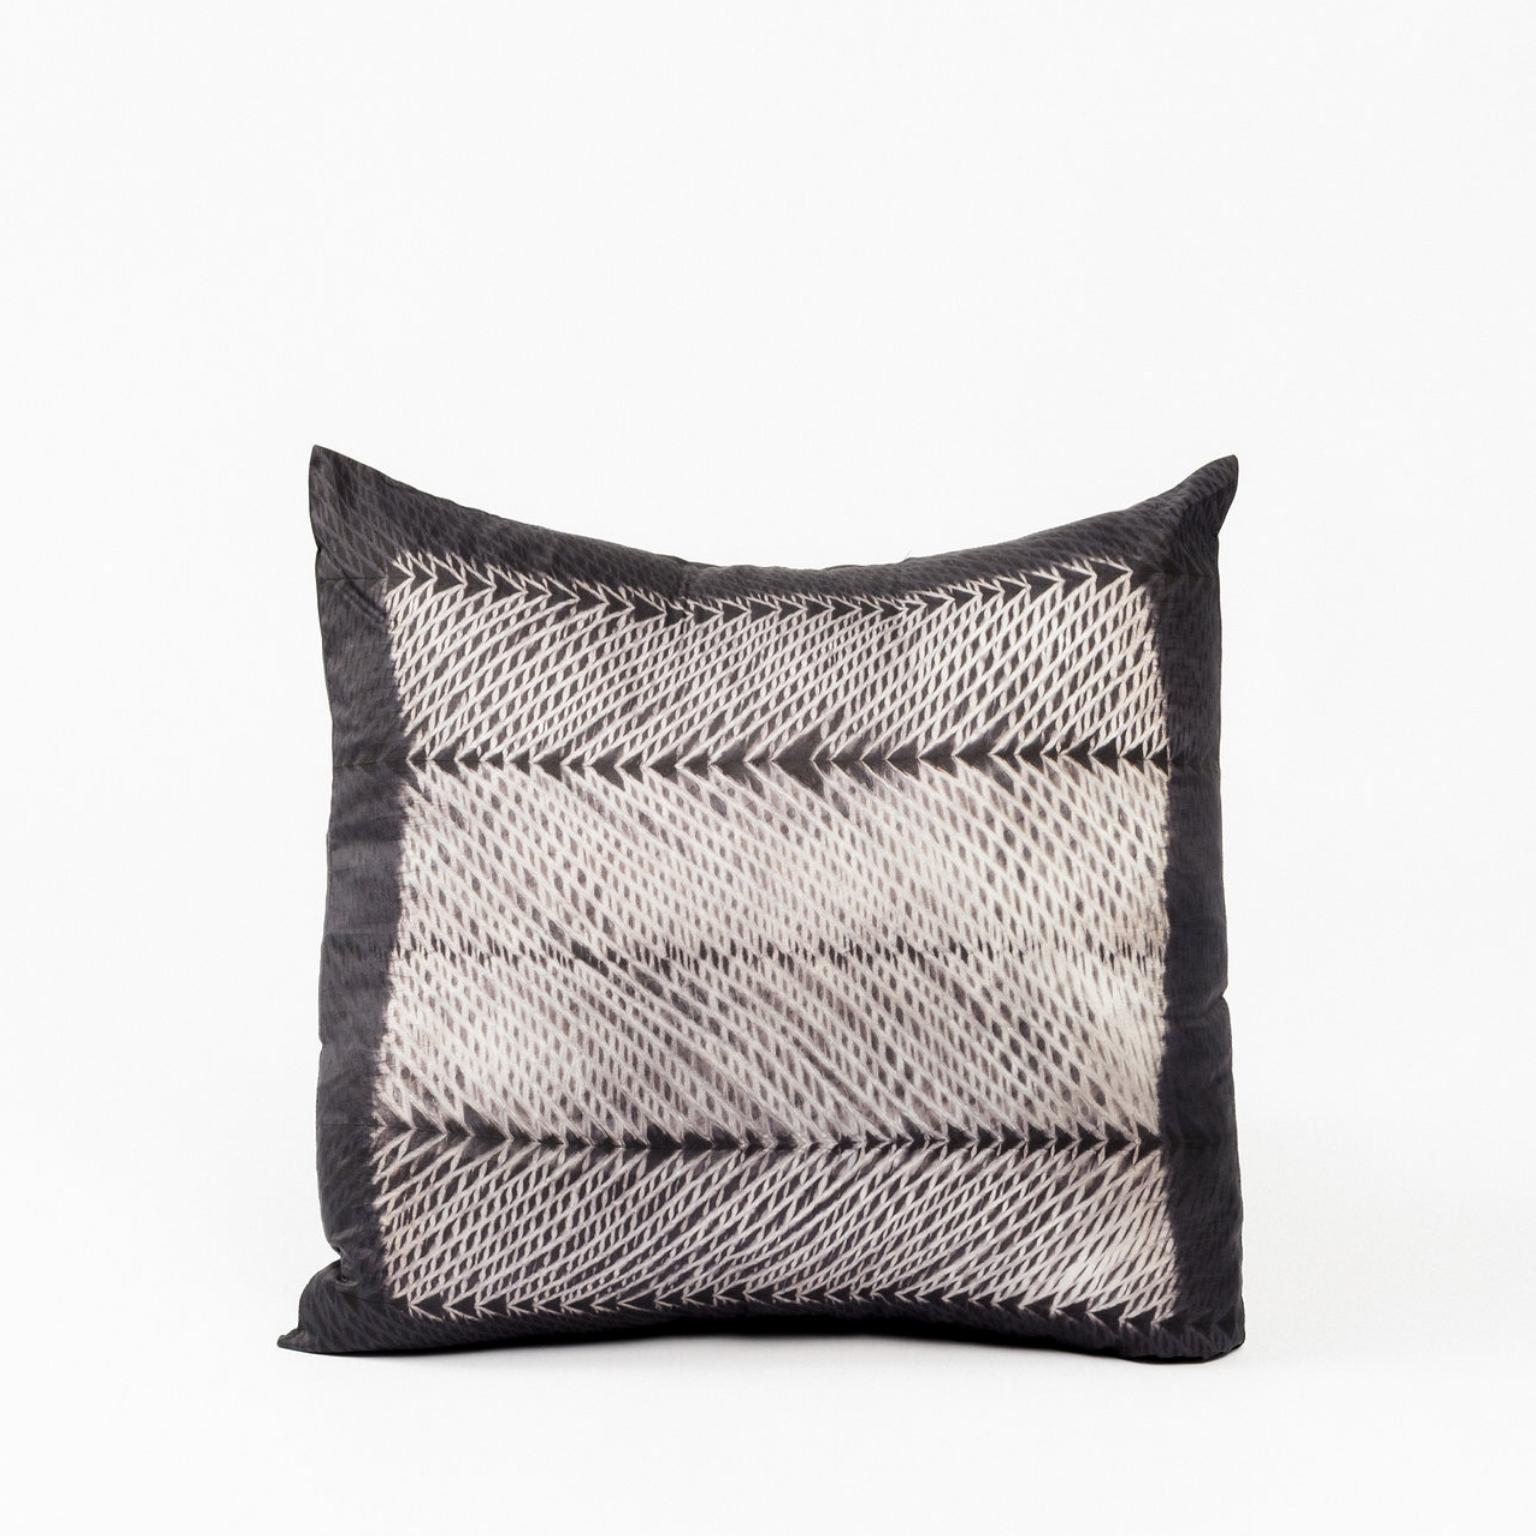 Individuelles Design von Studio Variously: Ara Black Pillow wird von Meisterhandwerkern in Indien handgefertigt. Studio Variously ist eine nachhaltige Designmarke mit Sitz in Michigan und arbeitet ausschließlich mit Kunsthandwerklichen